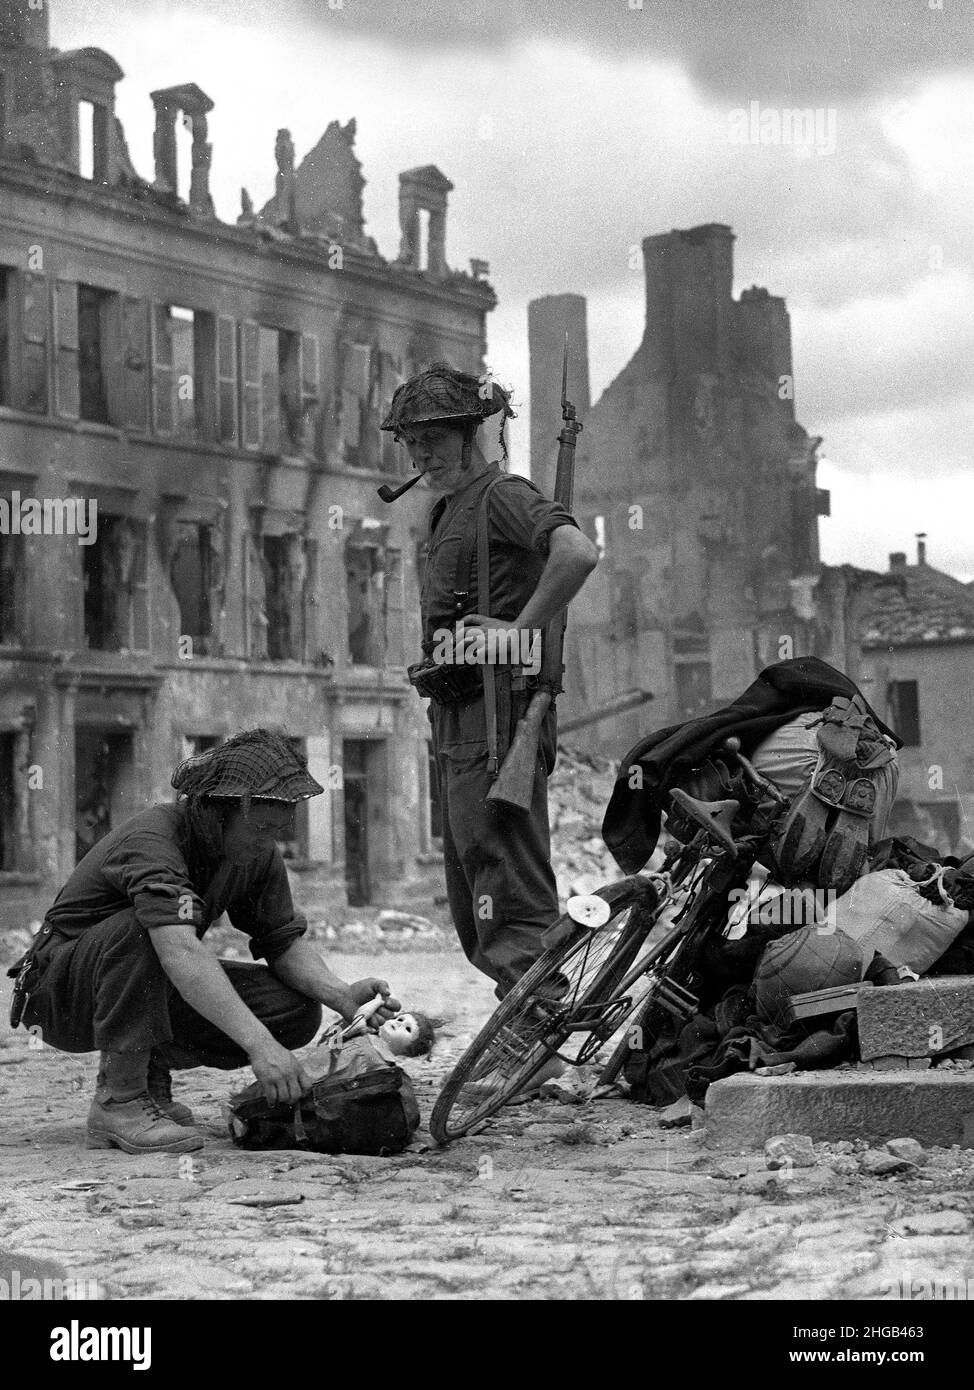 Nord de la France Seconde Guerre mondiale 1944 soldats britanniques regardant une poupée de childs trouvée avec une bicyclette de civils essayant de s'échapper.FICHIERS PLUS VOLUMINEUX DISPONIBLES SUR DEMANDE Banque D'Images